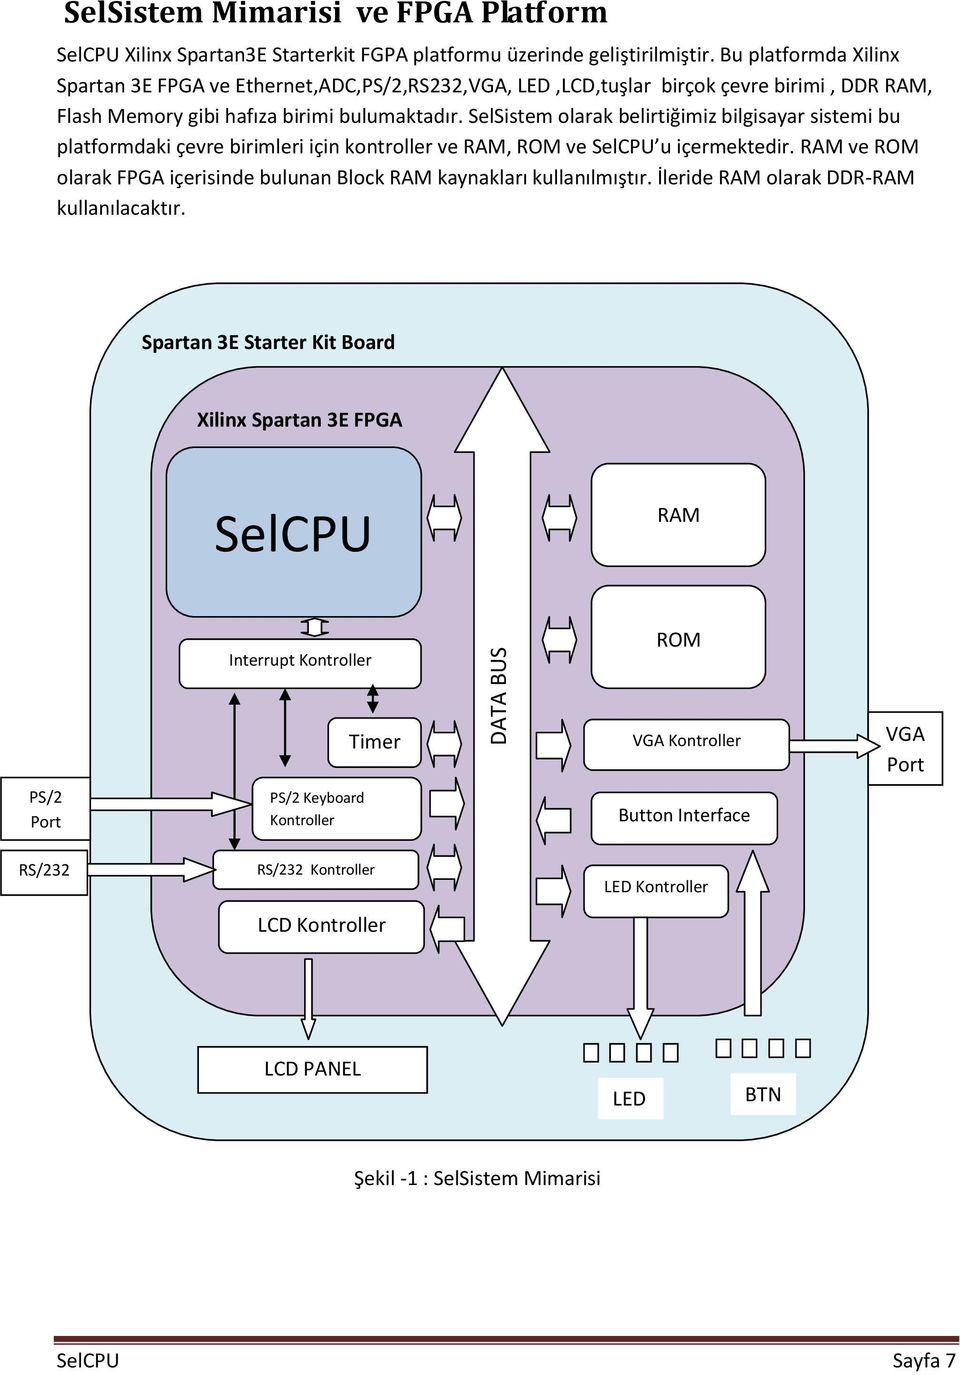 SelSistem olarak belirtiğimiz bilgisayar sistemi bu platformdaki çevre birimleri için kontroller ve RAM, ROM ve SelCPU u içermektedir.